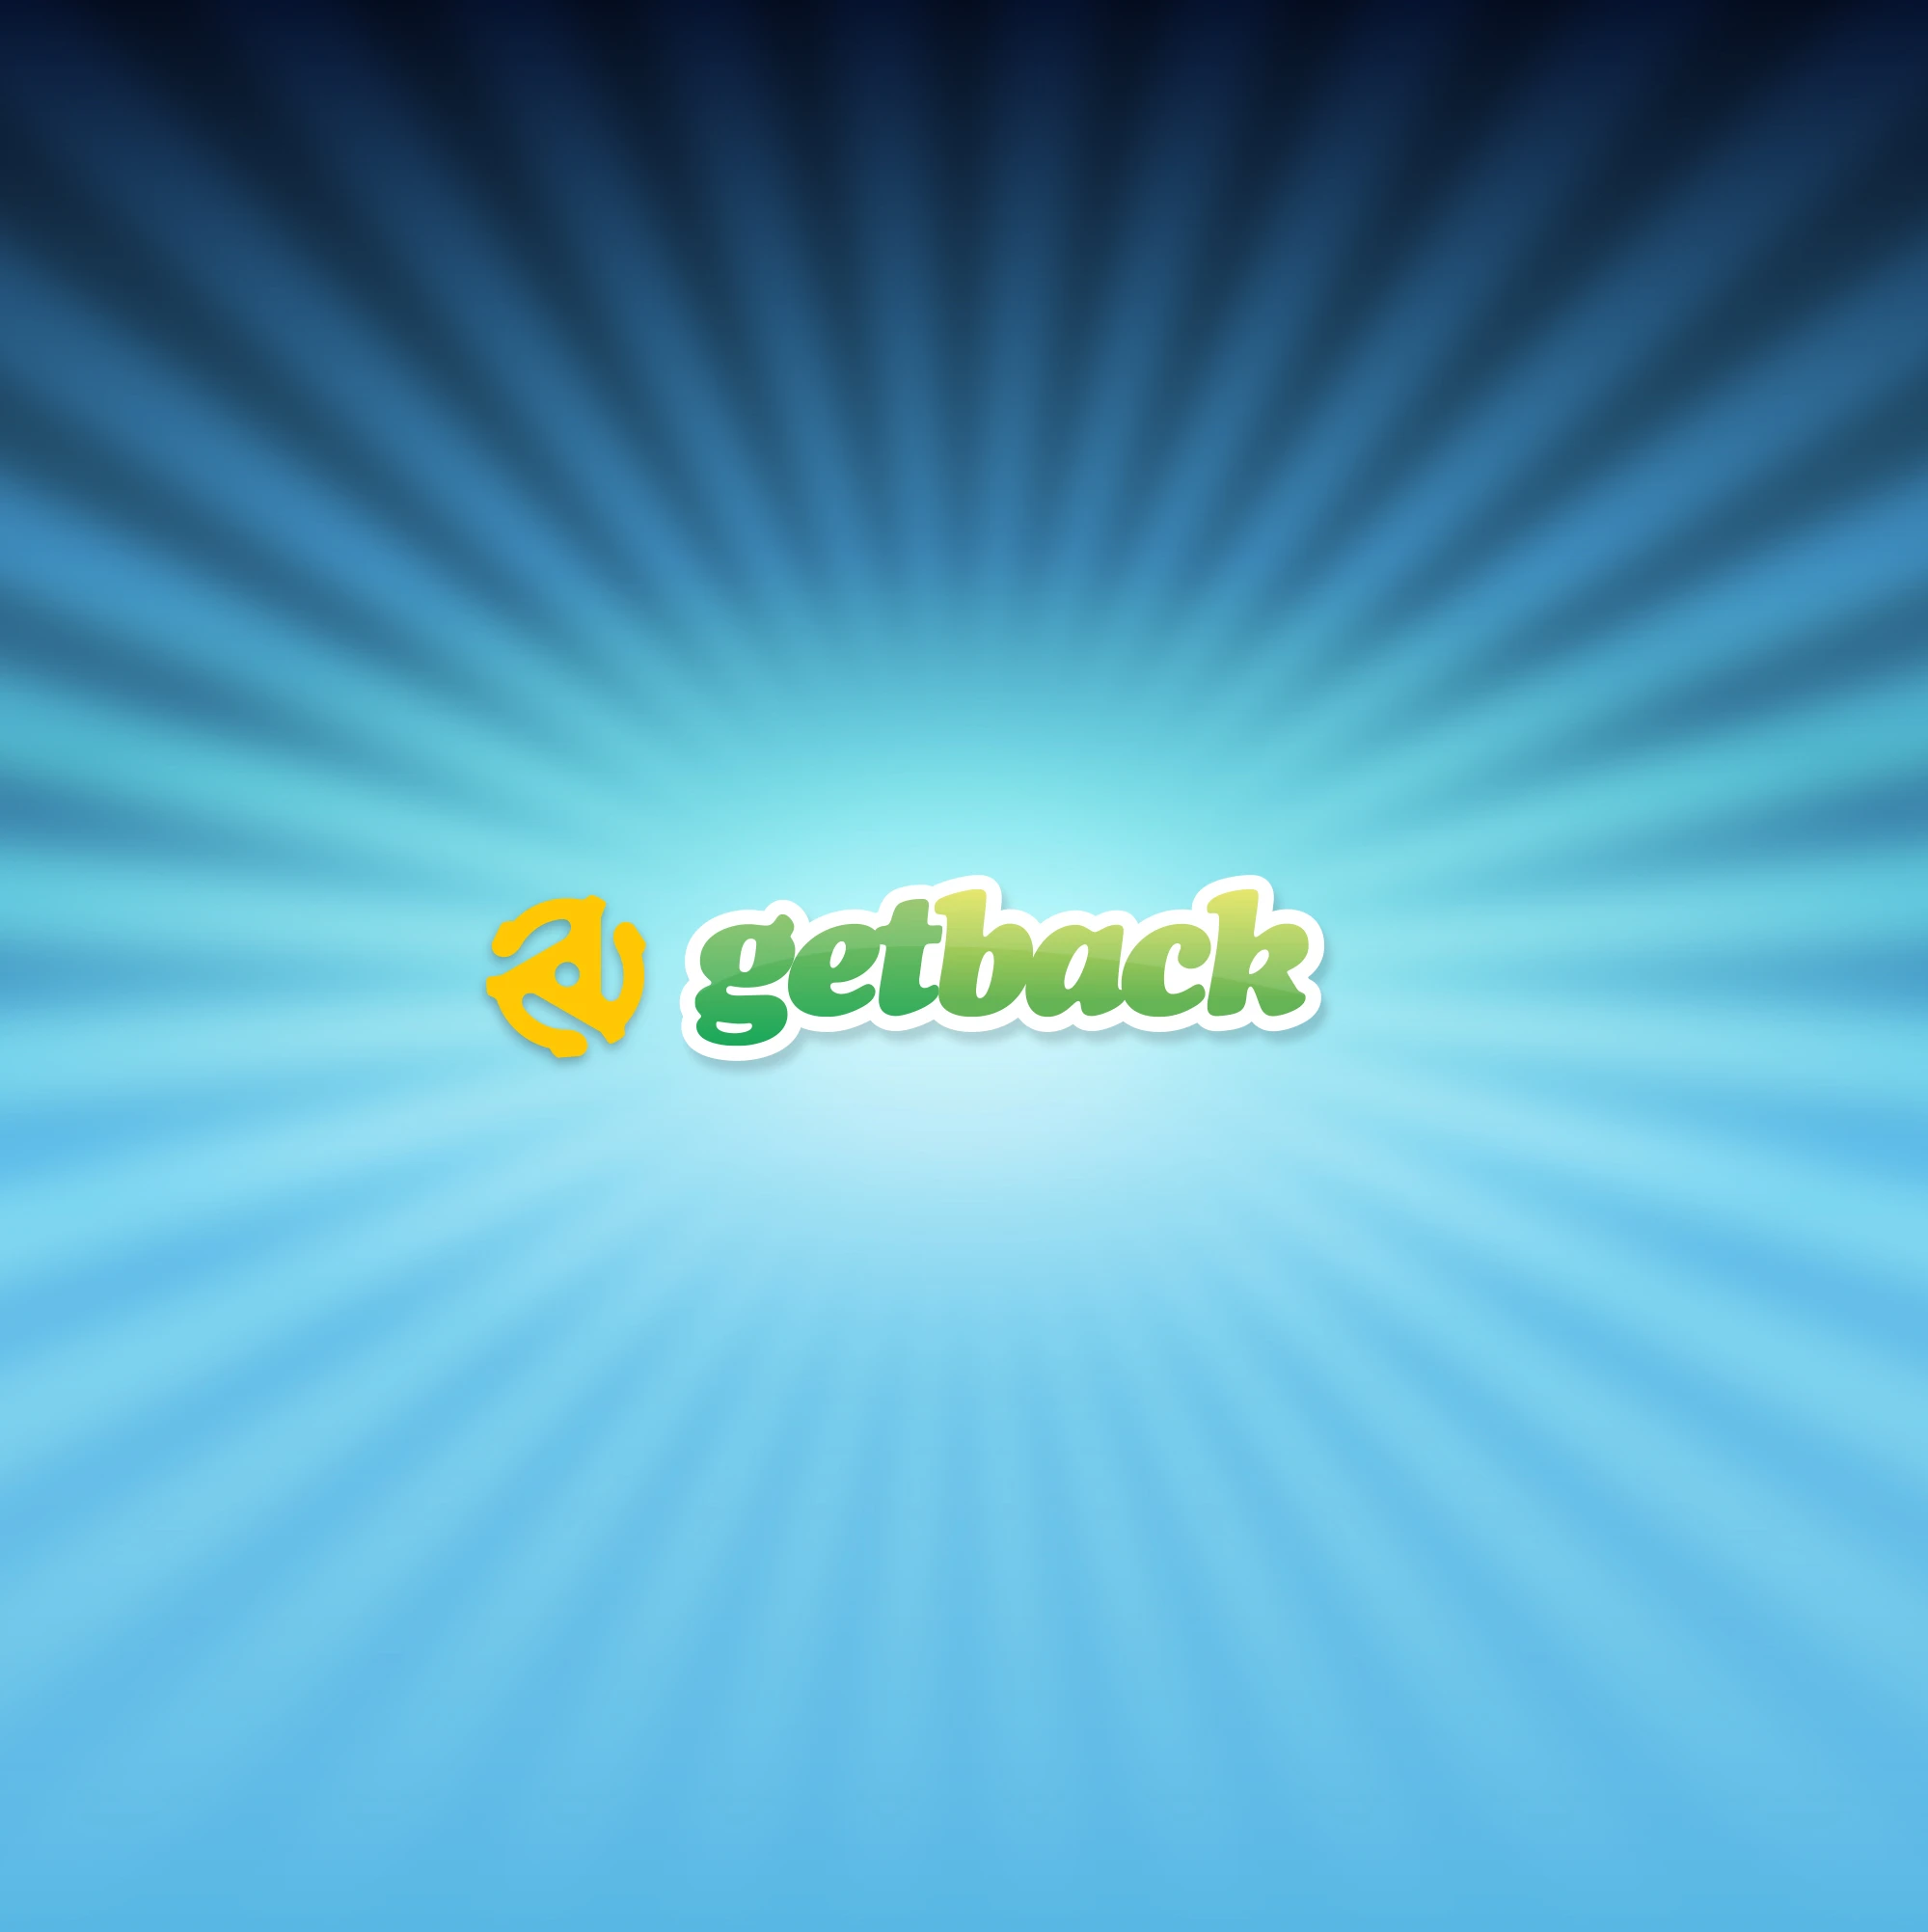 GetBack Logo with Spindle Render